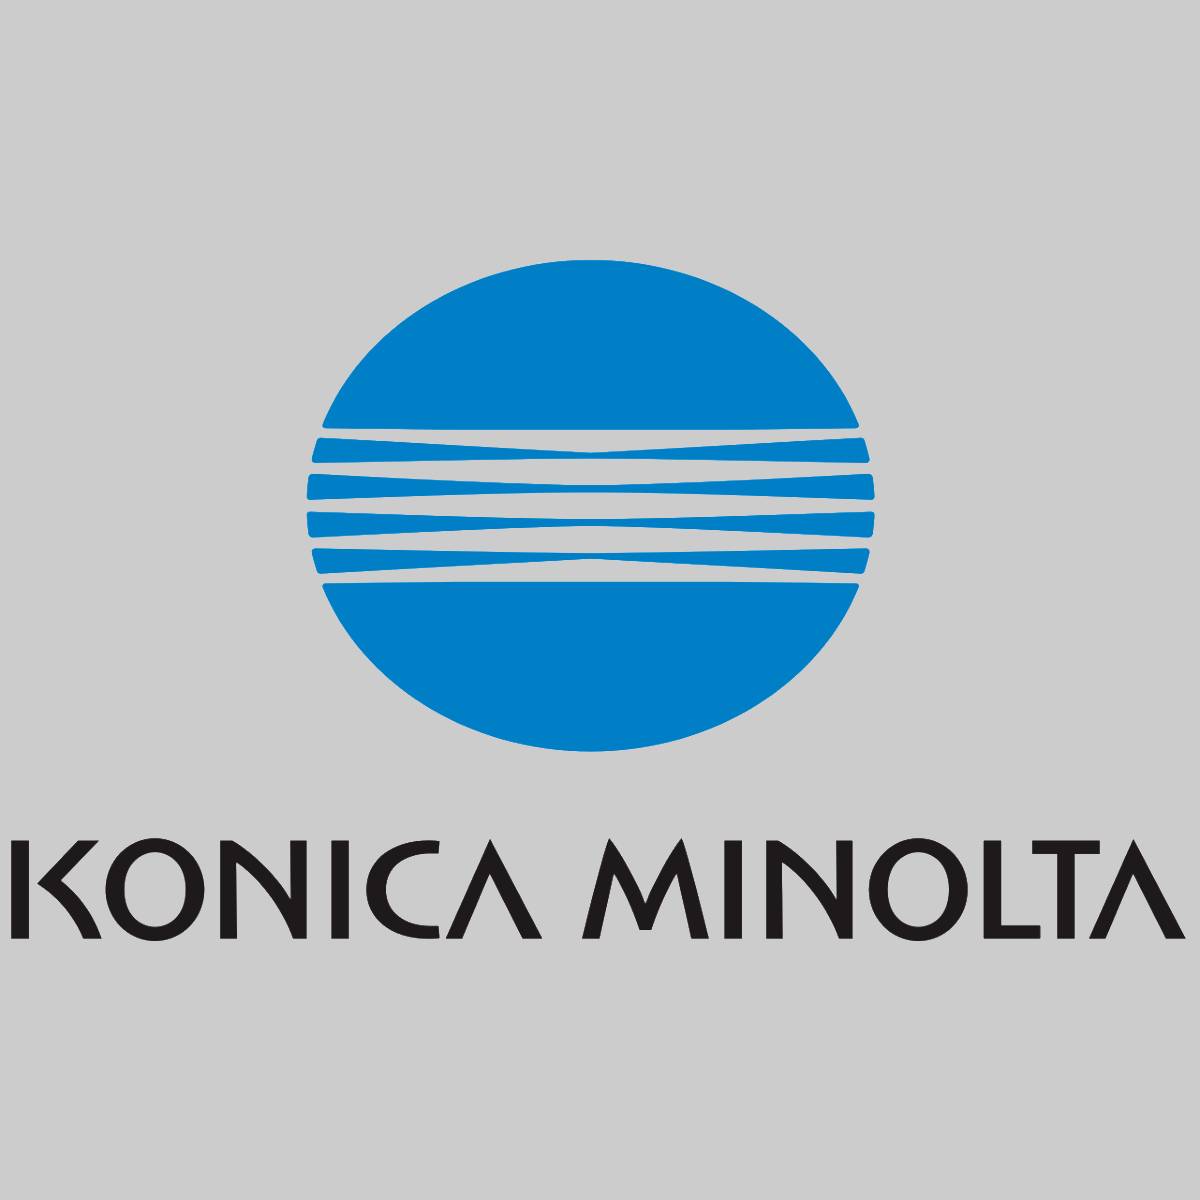 "Toner d'origine Konica Minolta TNP54 noir pour Bizhub 4402P AADX050 nouveau OVP